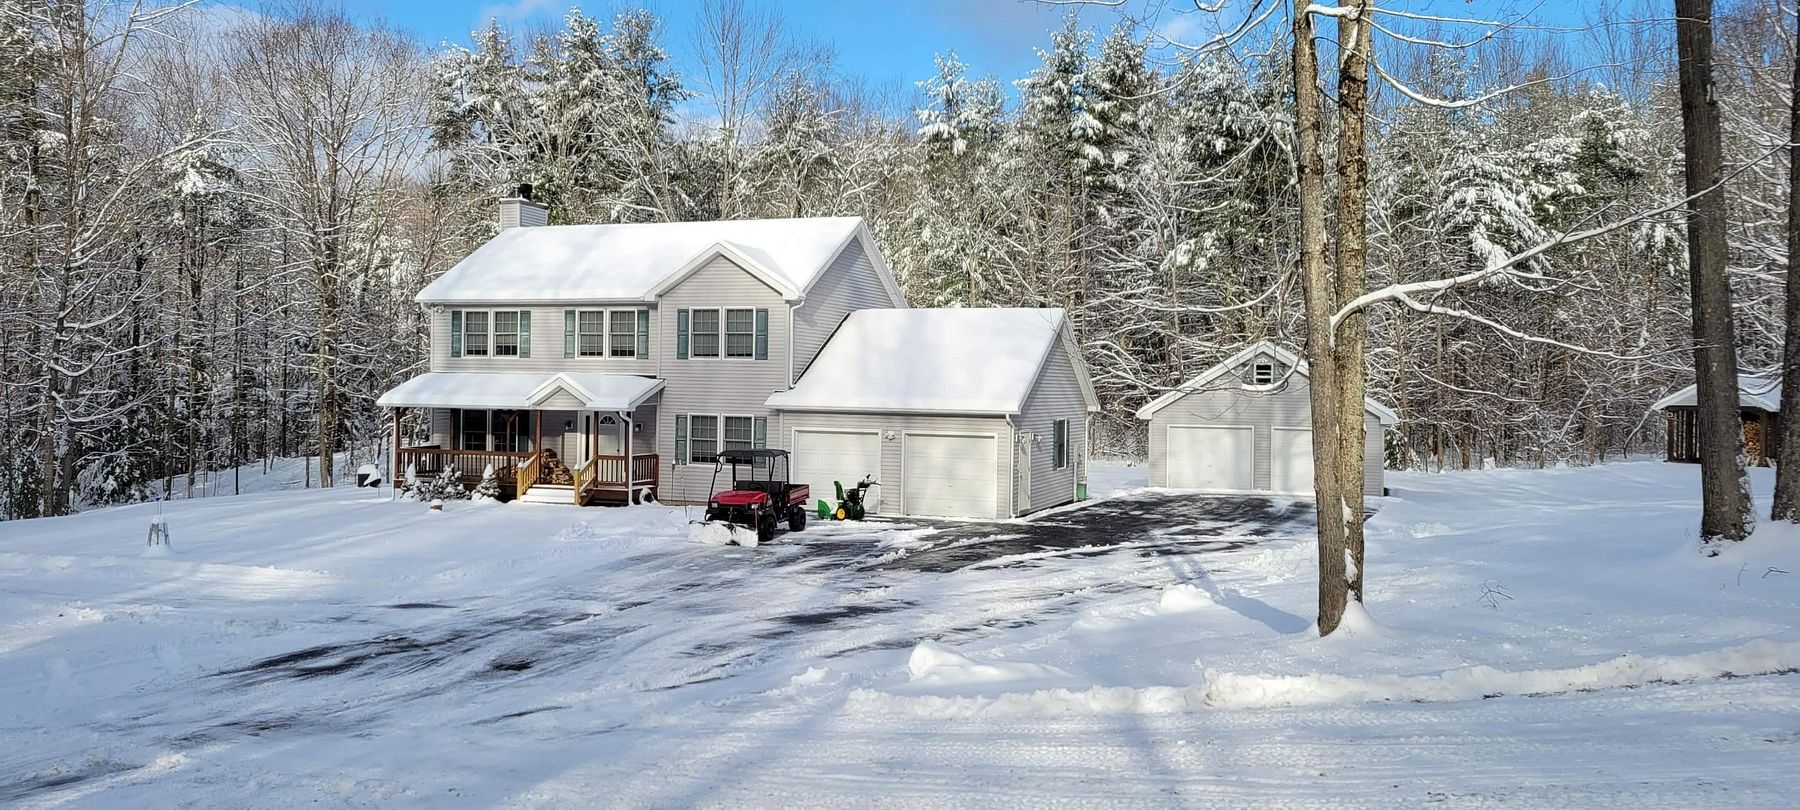 10.9 Acres of Land & Home Castleton, Vermont, VT